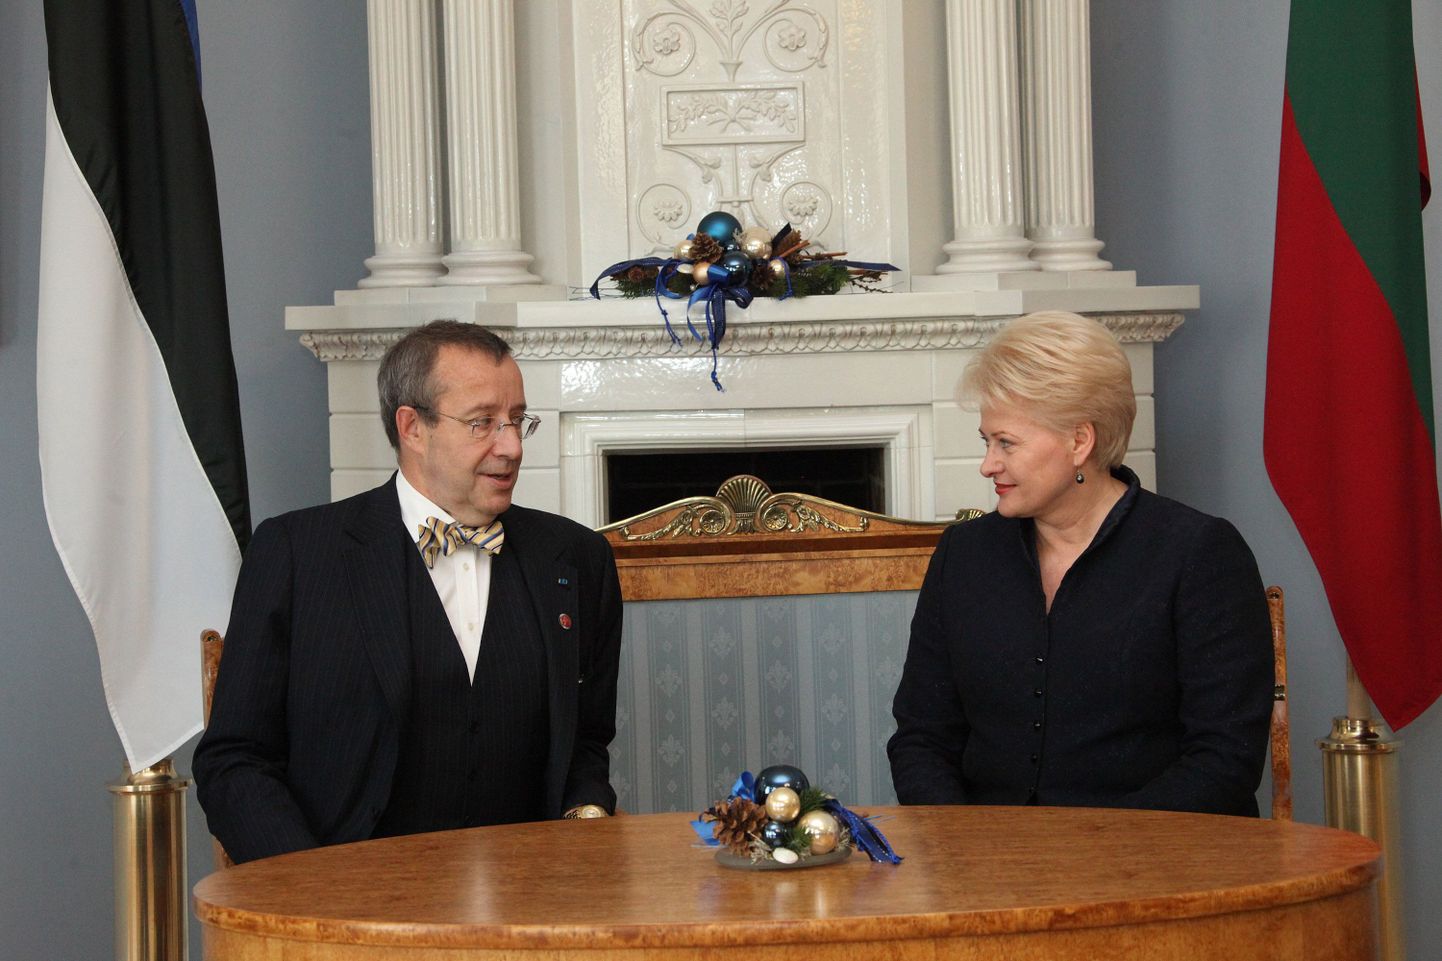 President Toomas Hendrik Ilves kohtus täna Vilniuses Leedu riigipea Dalia
Grybauskaitėga.